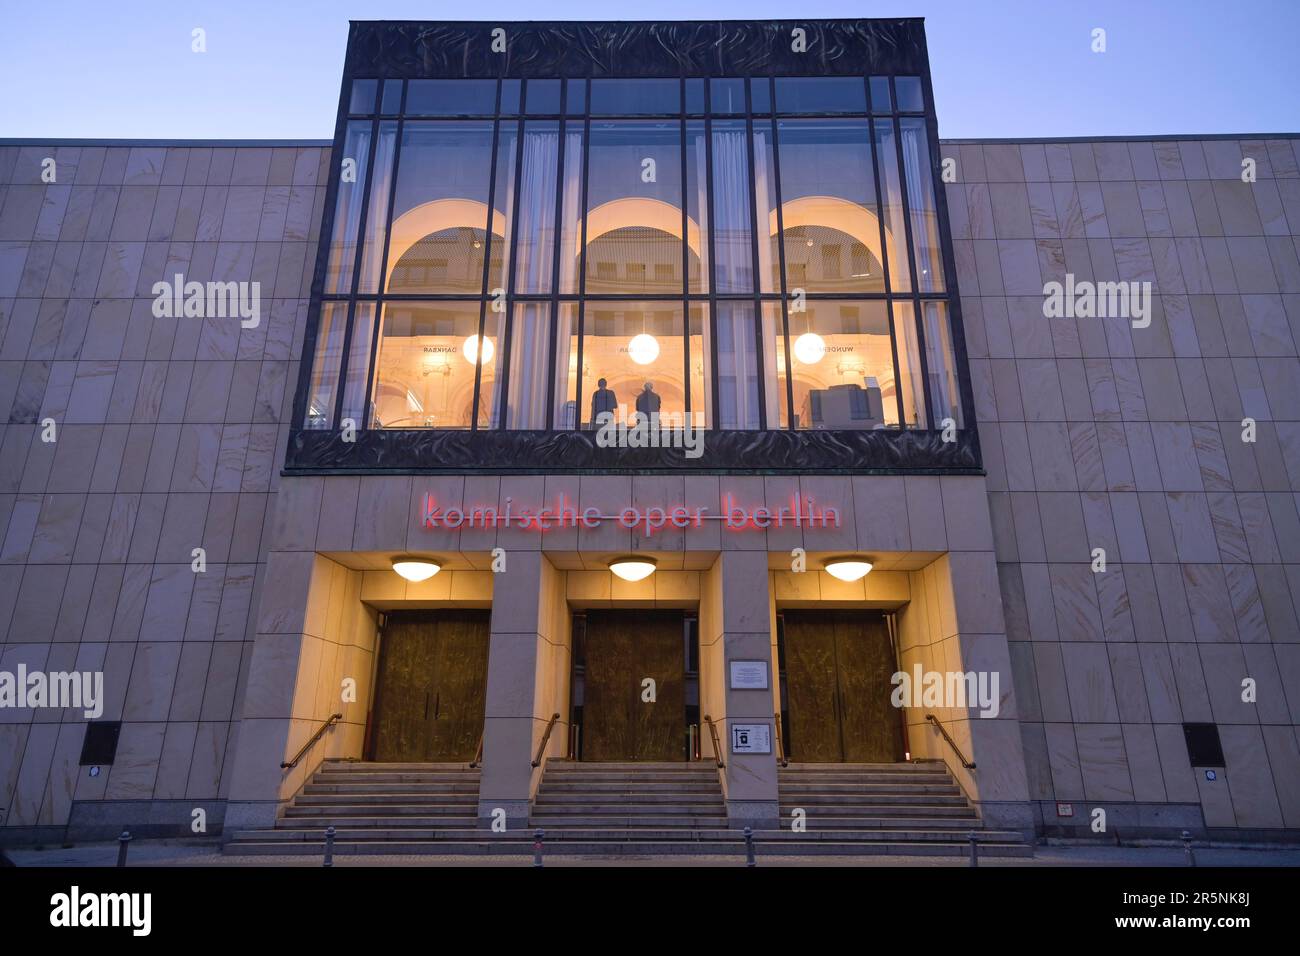 Komische Oper, Behrenstrasse, Mitte, Berlin, Germany Stock Photo